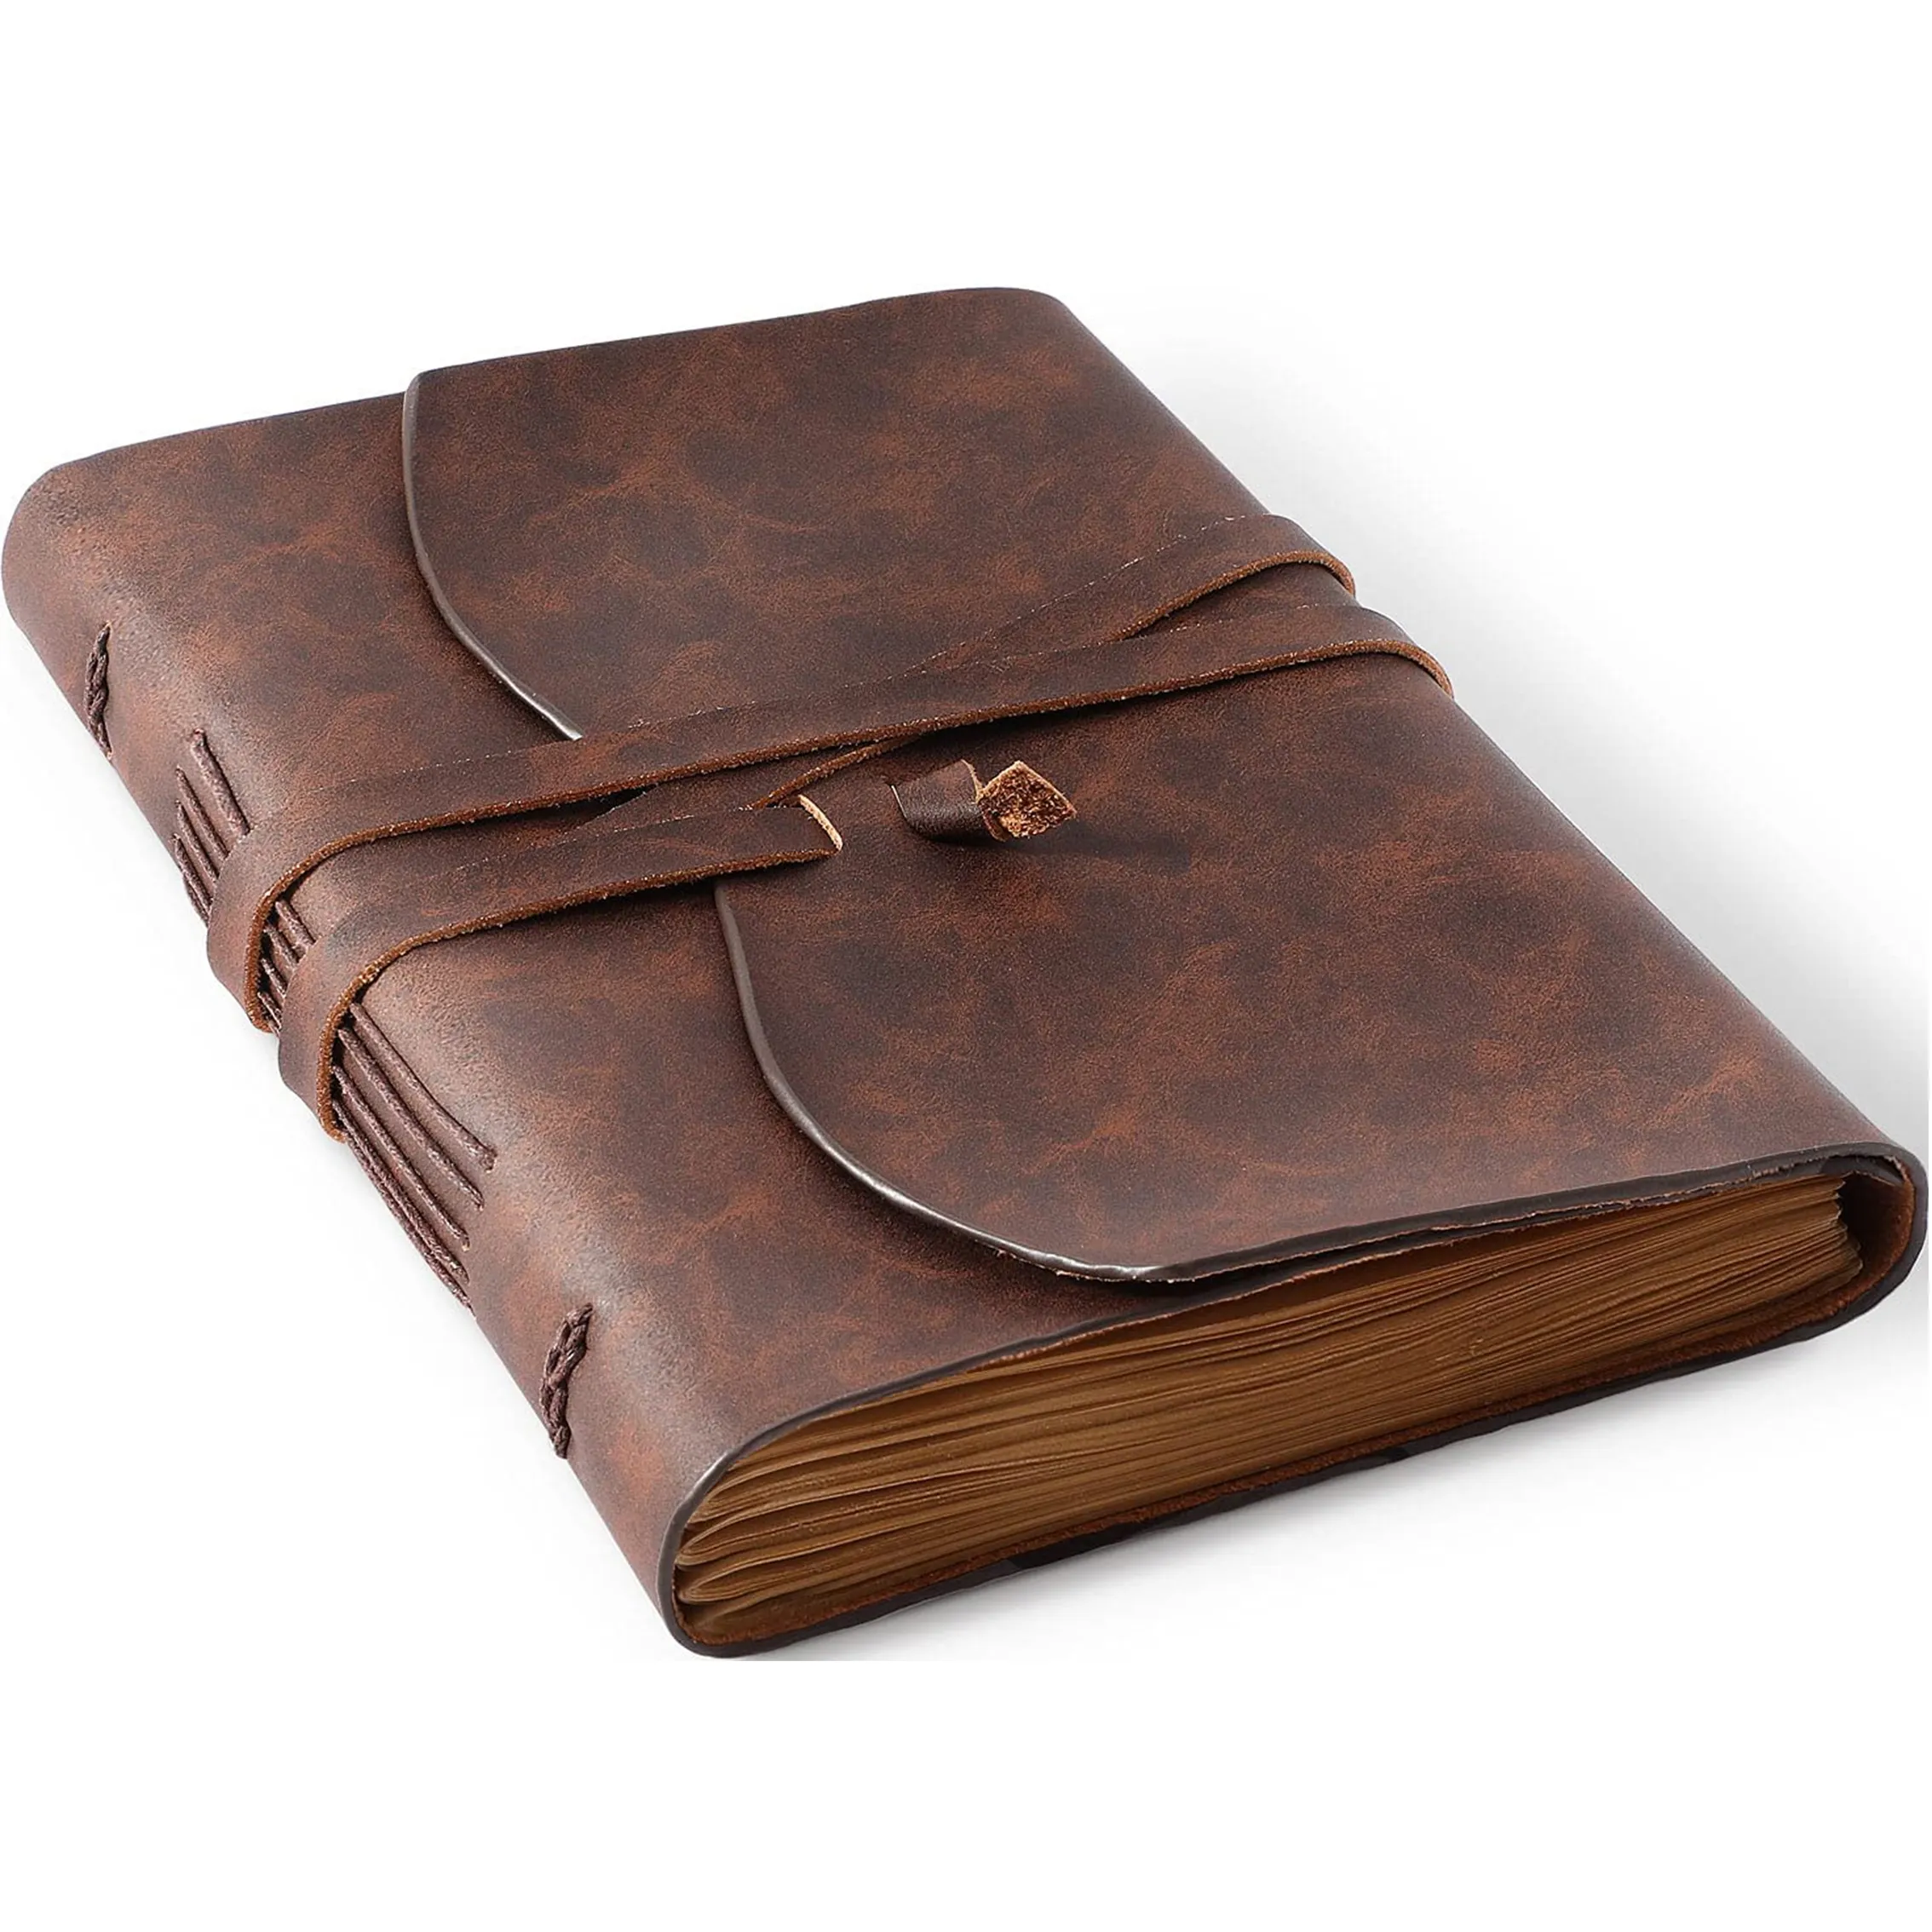 Сменный мягкий чехол для 240 страниц винтажный коричневый Сумасшедший конь из натуральной кожи ручной работы в переплете дневник